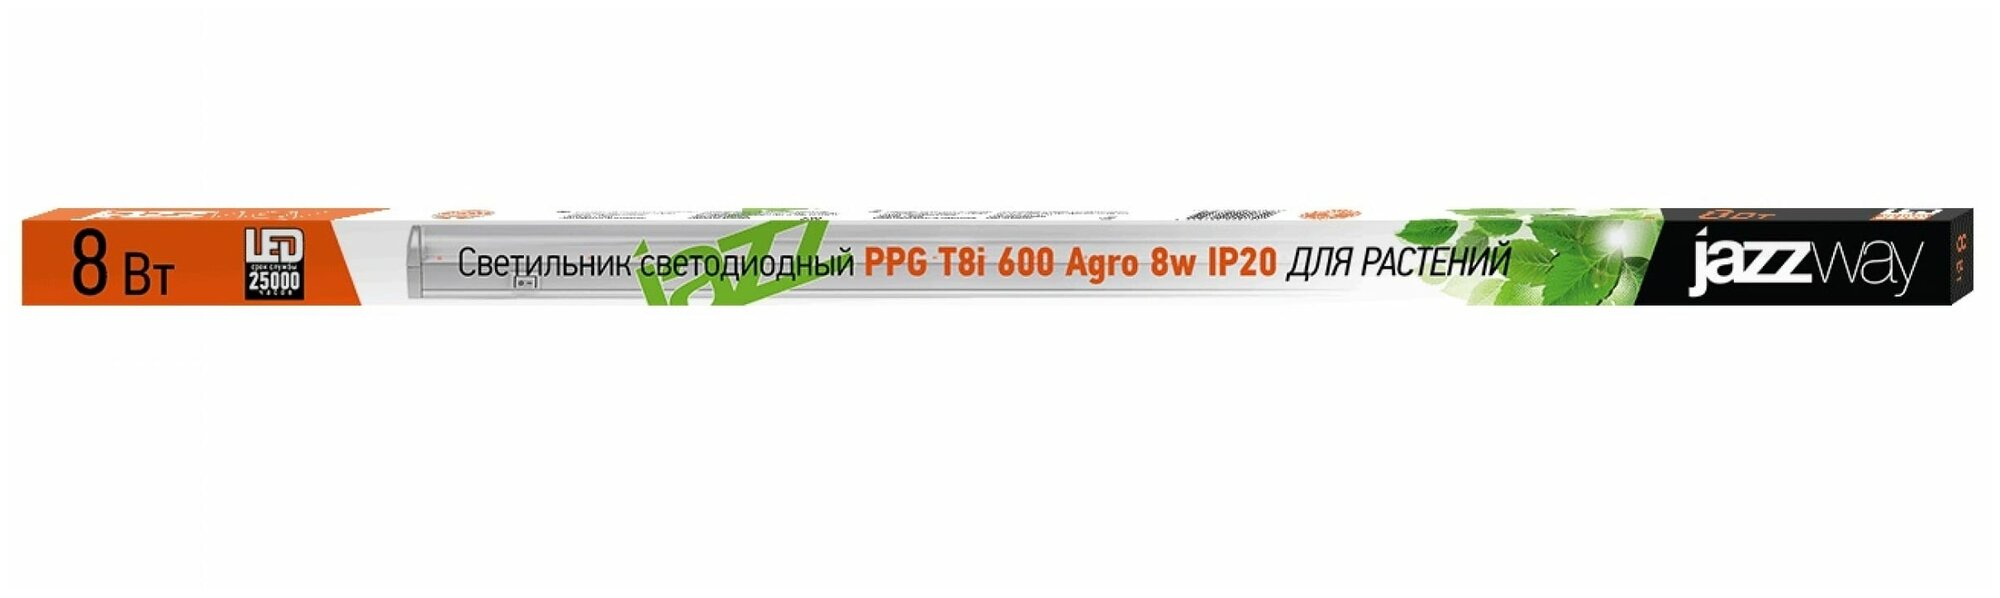 Светильник светодиодный (для растений) Jazzway PPG T5i-600 Agro 8w IP20